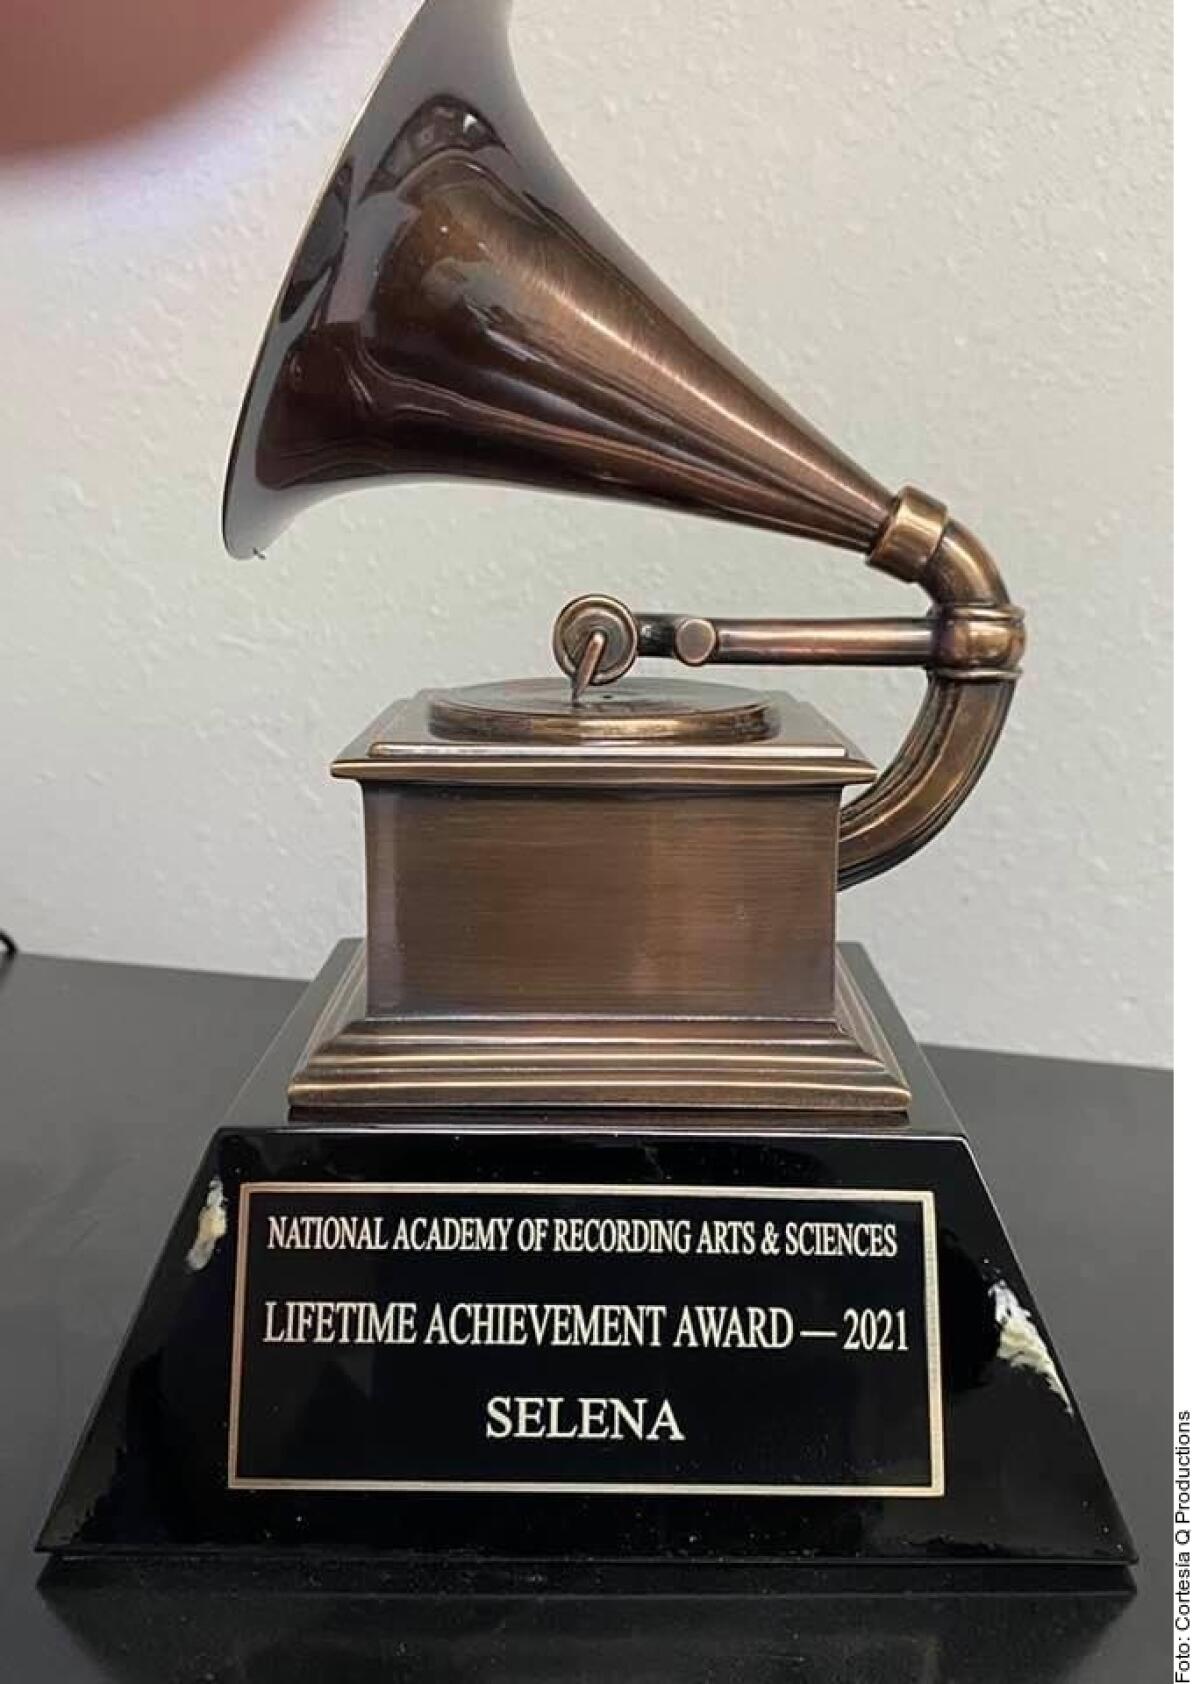 El segundo Grammy de Selena es póstumo efectivamente.